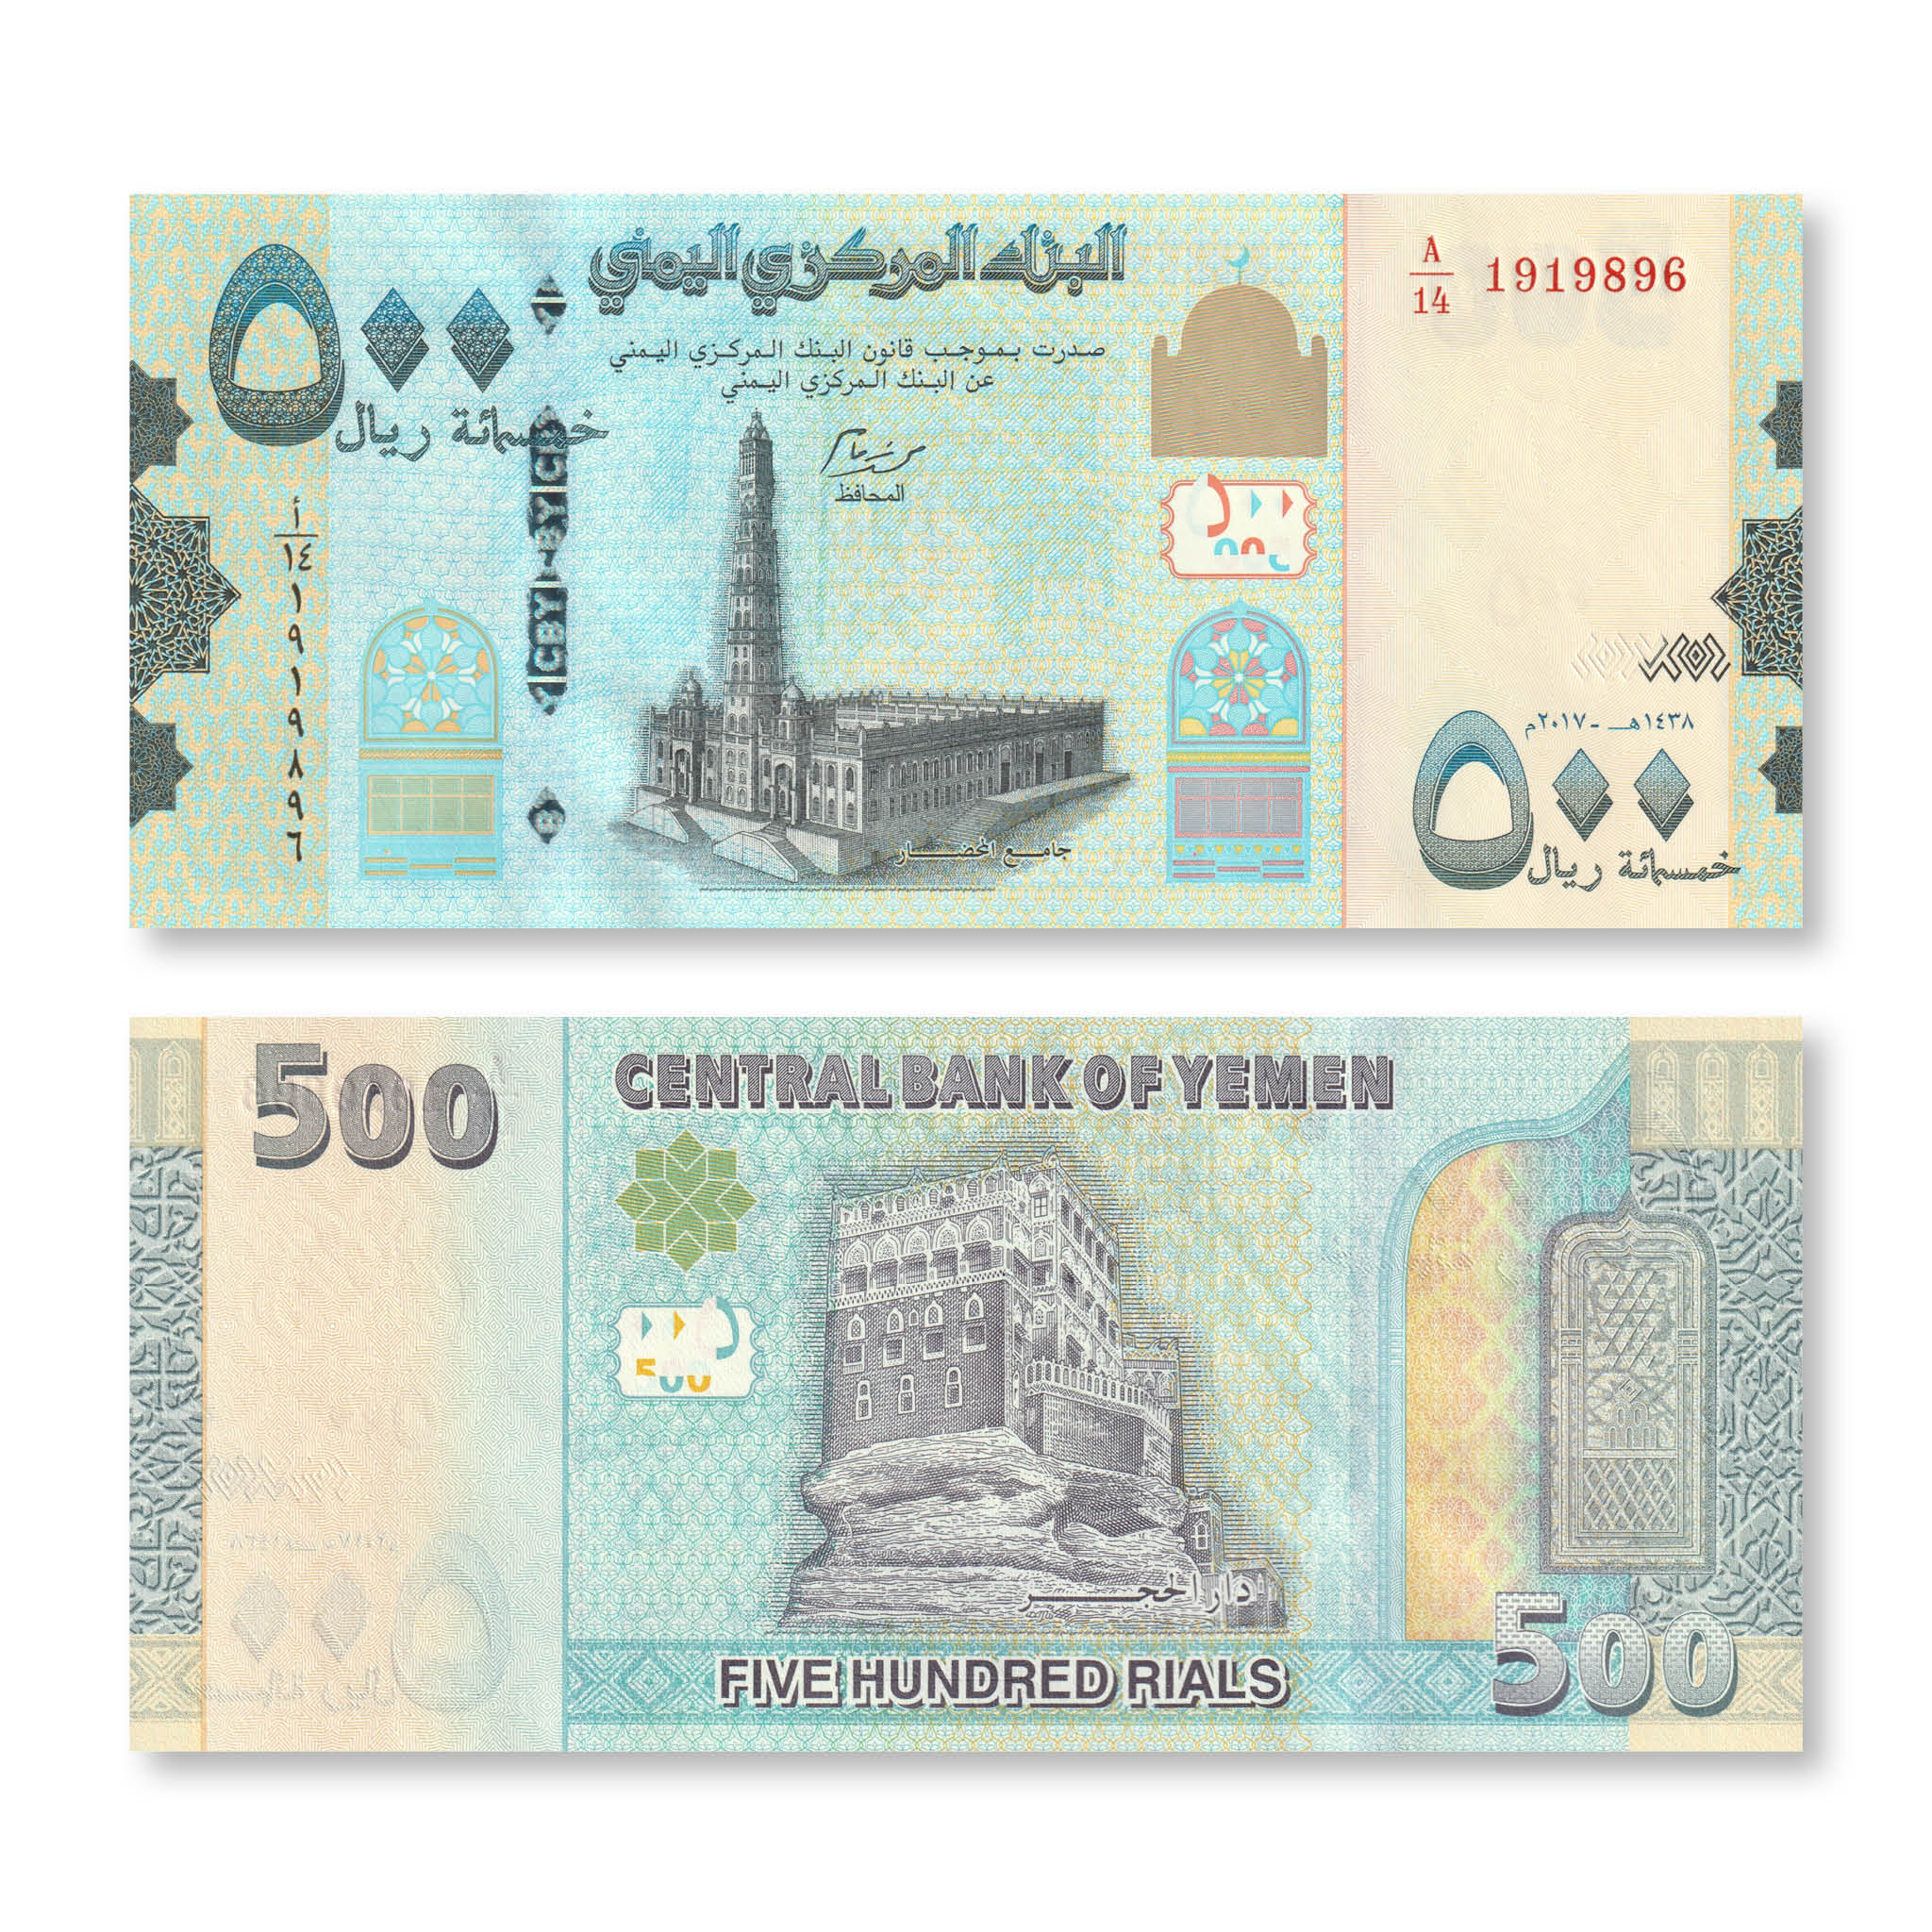 Yemen 500 Rials, 2017, B128b, P39, UNC - Robert's World Money - World Banknotes